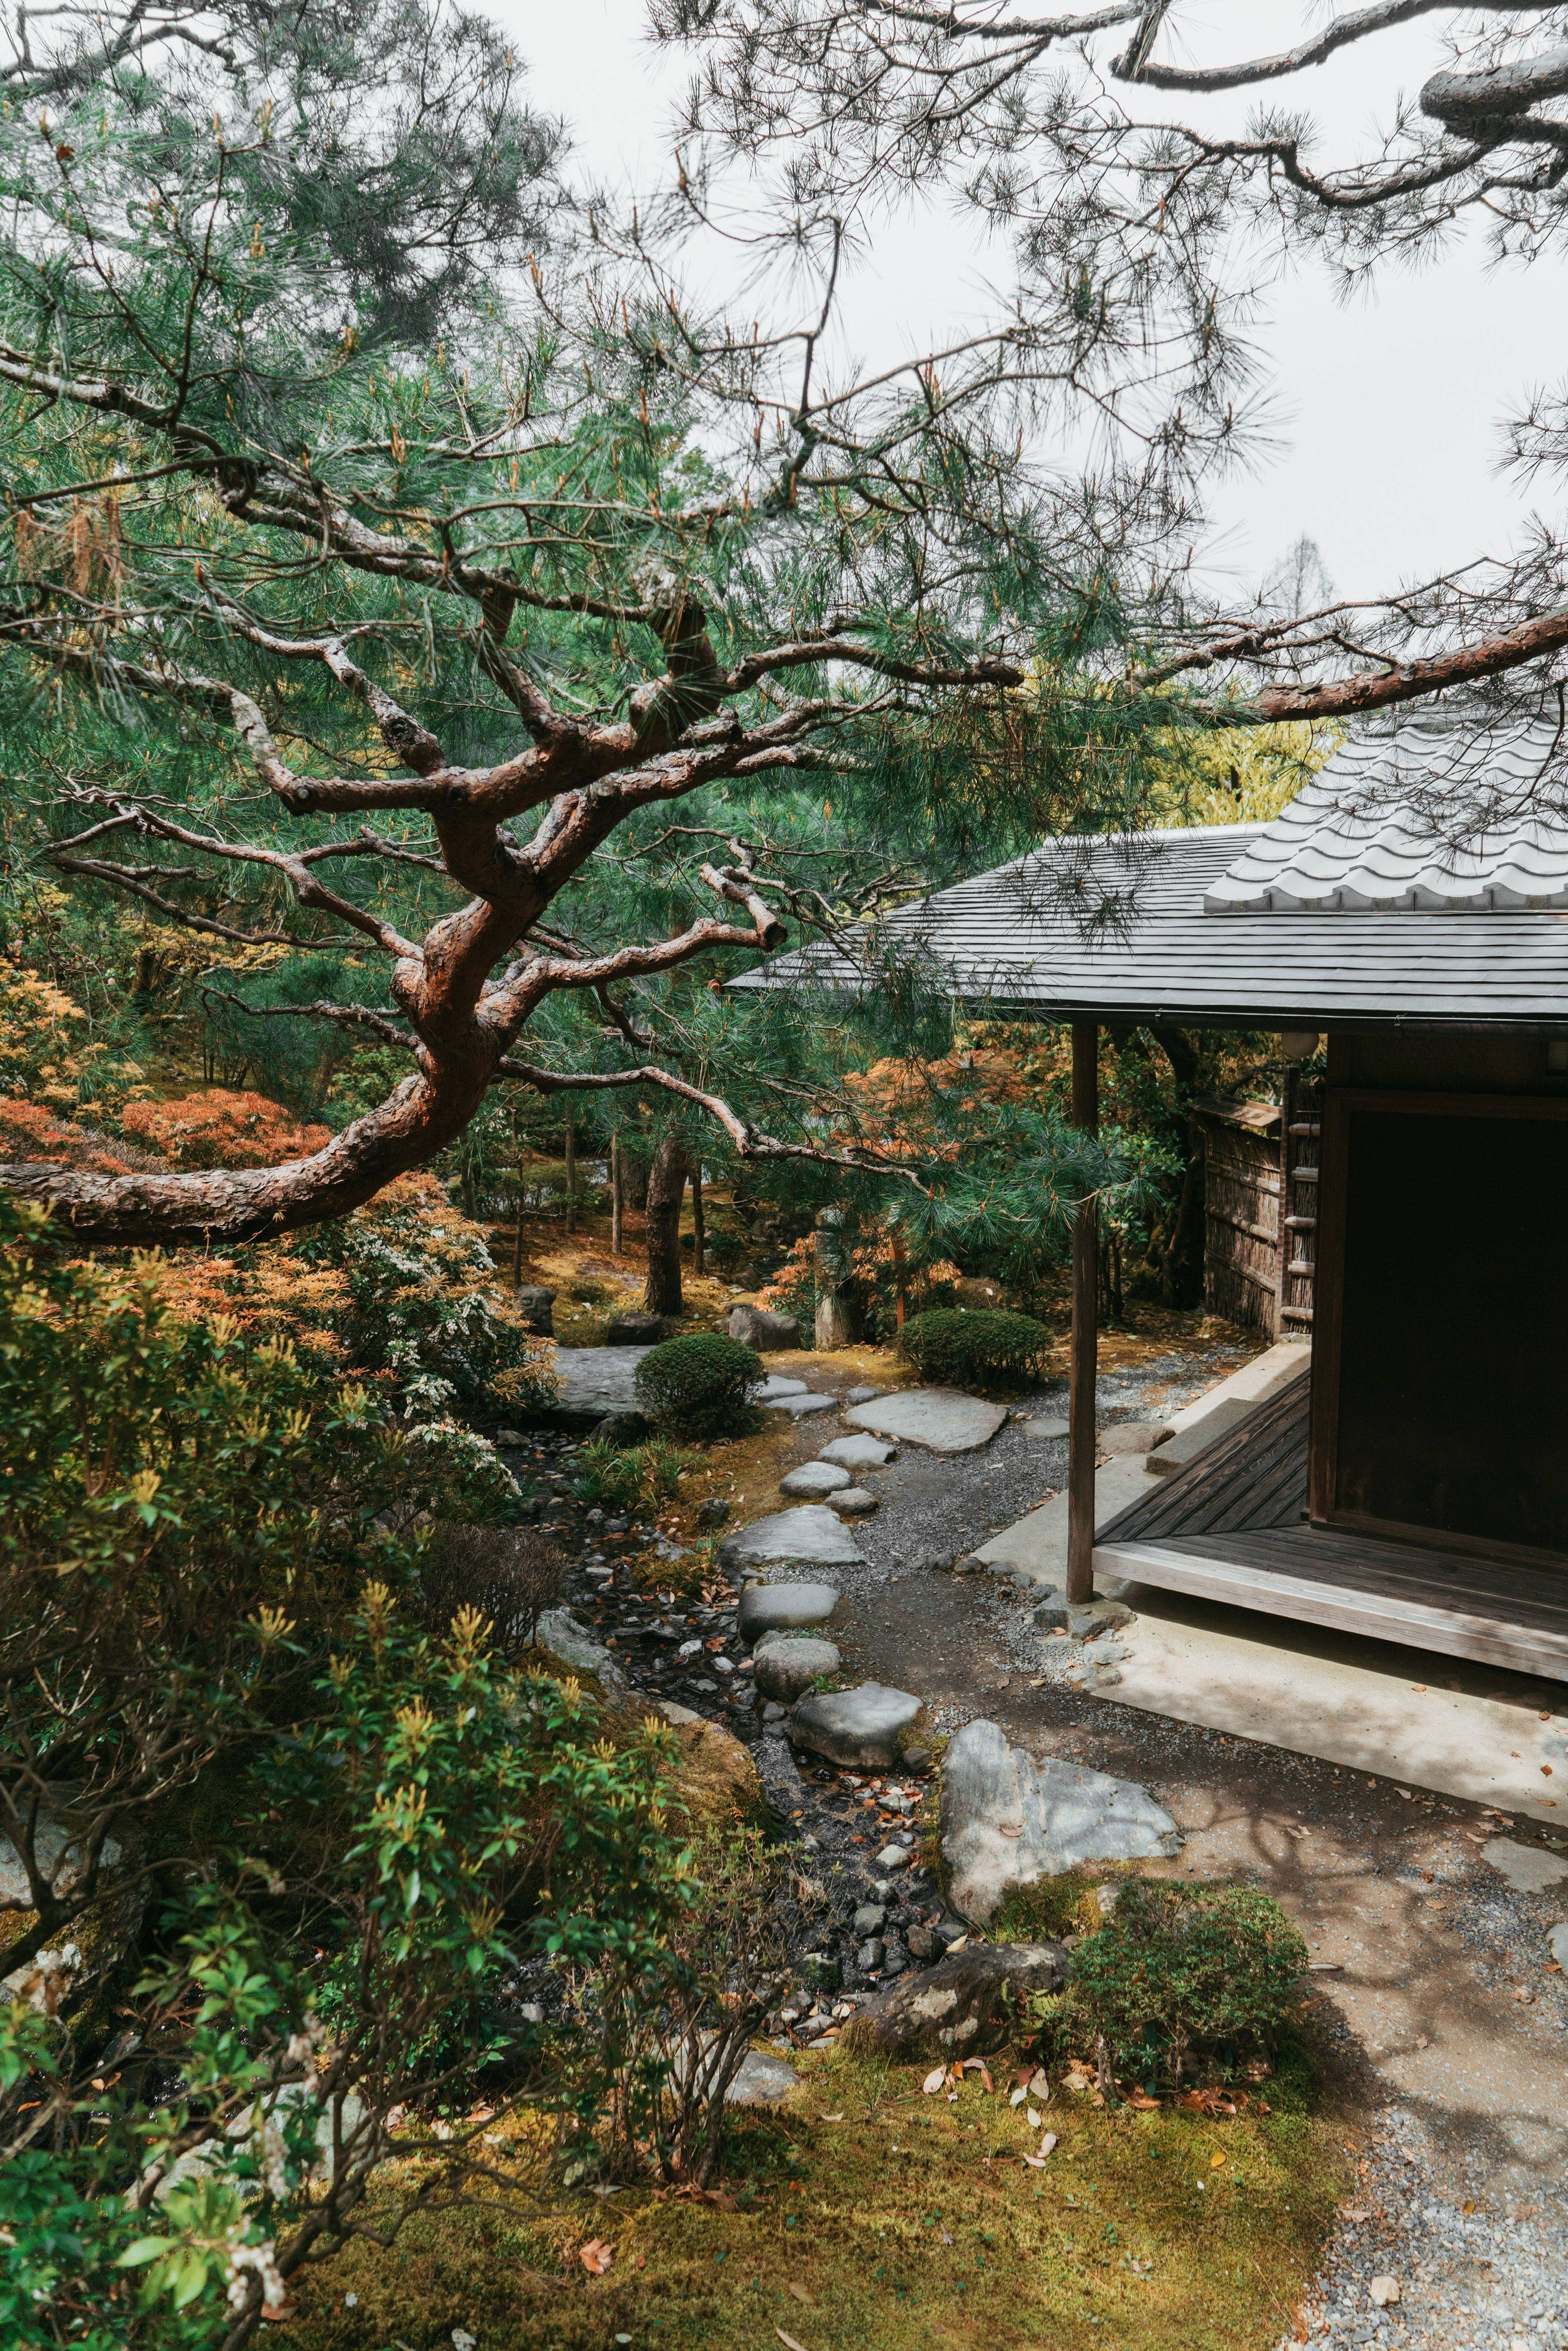 Small Japanese Garden